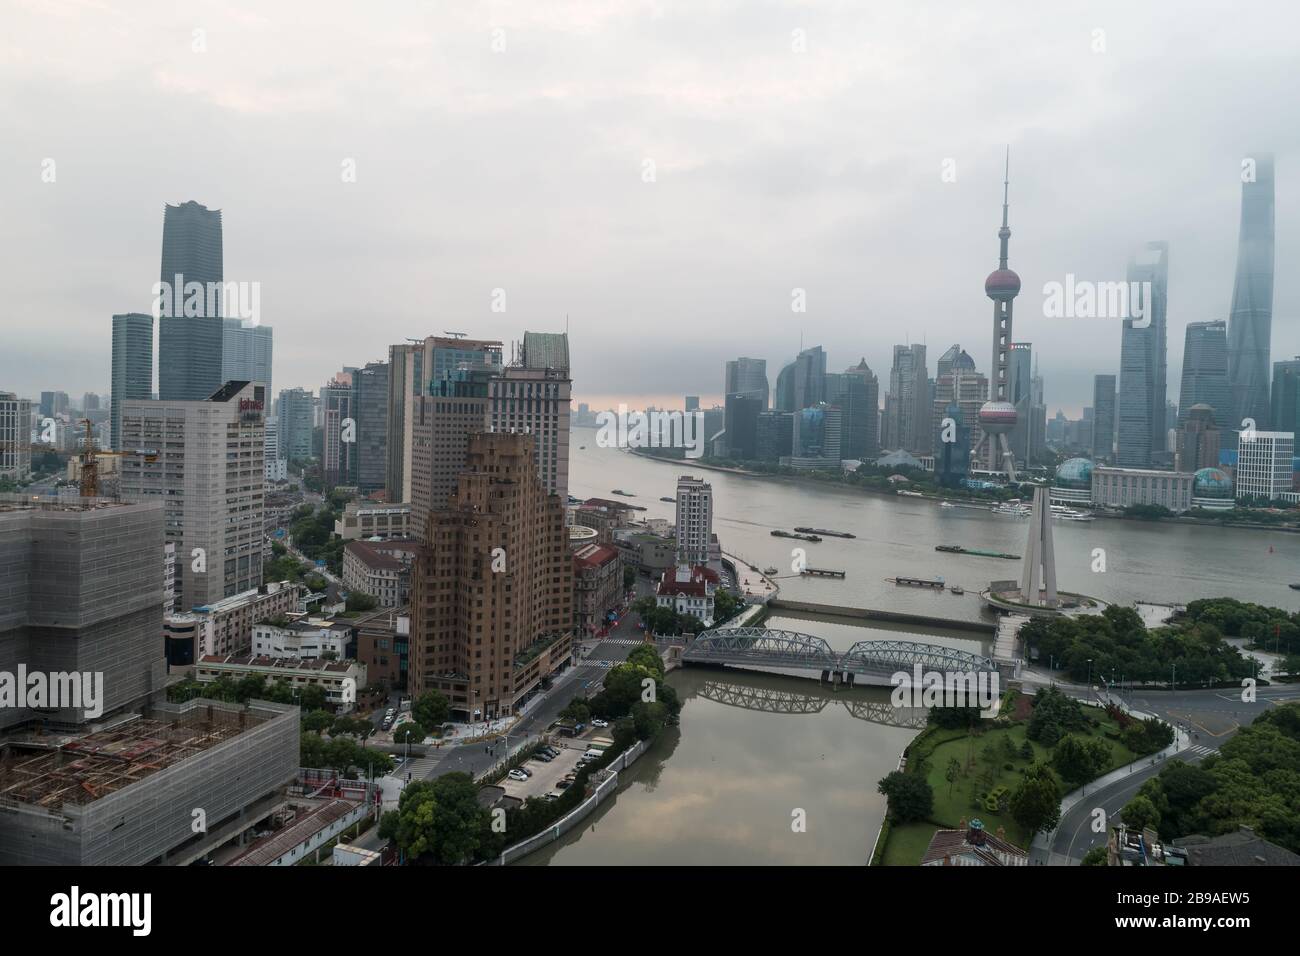 Shanghai, China - 21 de agosto de 2018: Vista aérea desde arriba del distrito de Huangpu al amanecer, en un día nublado, la ciudad de Shanghai, China Foto de stock